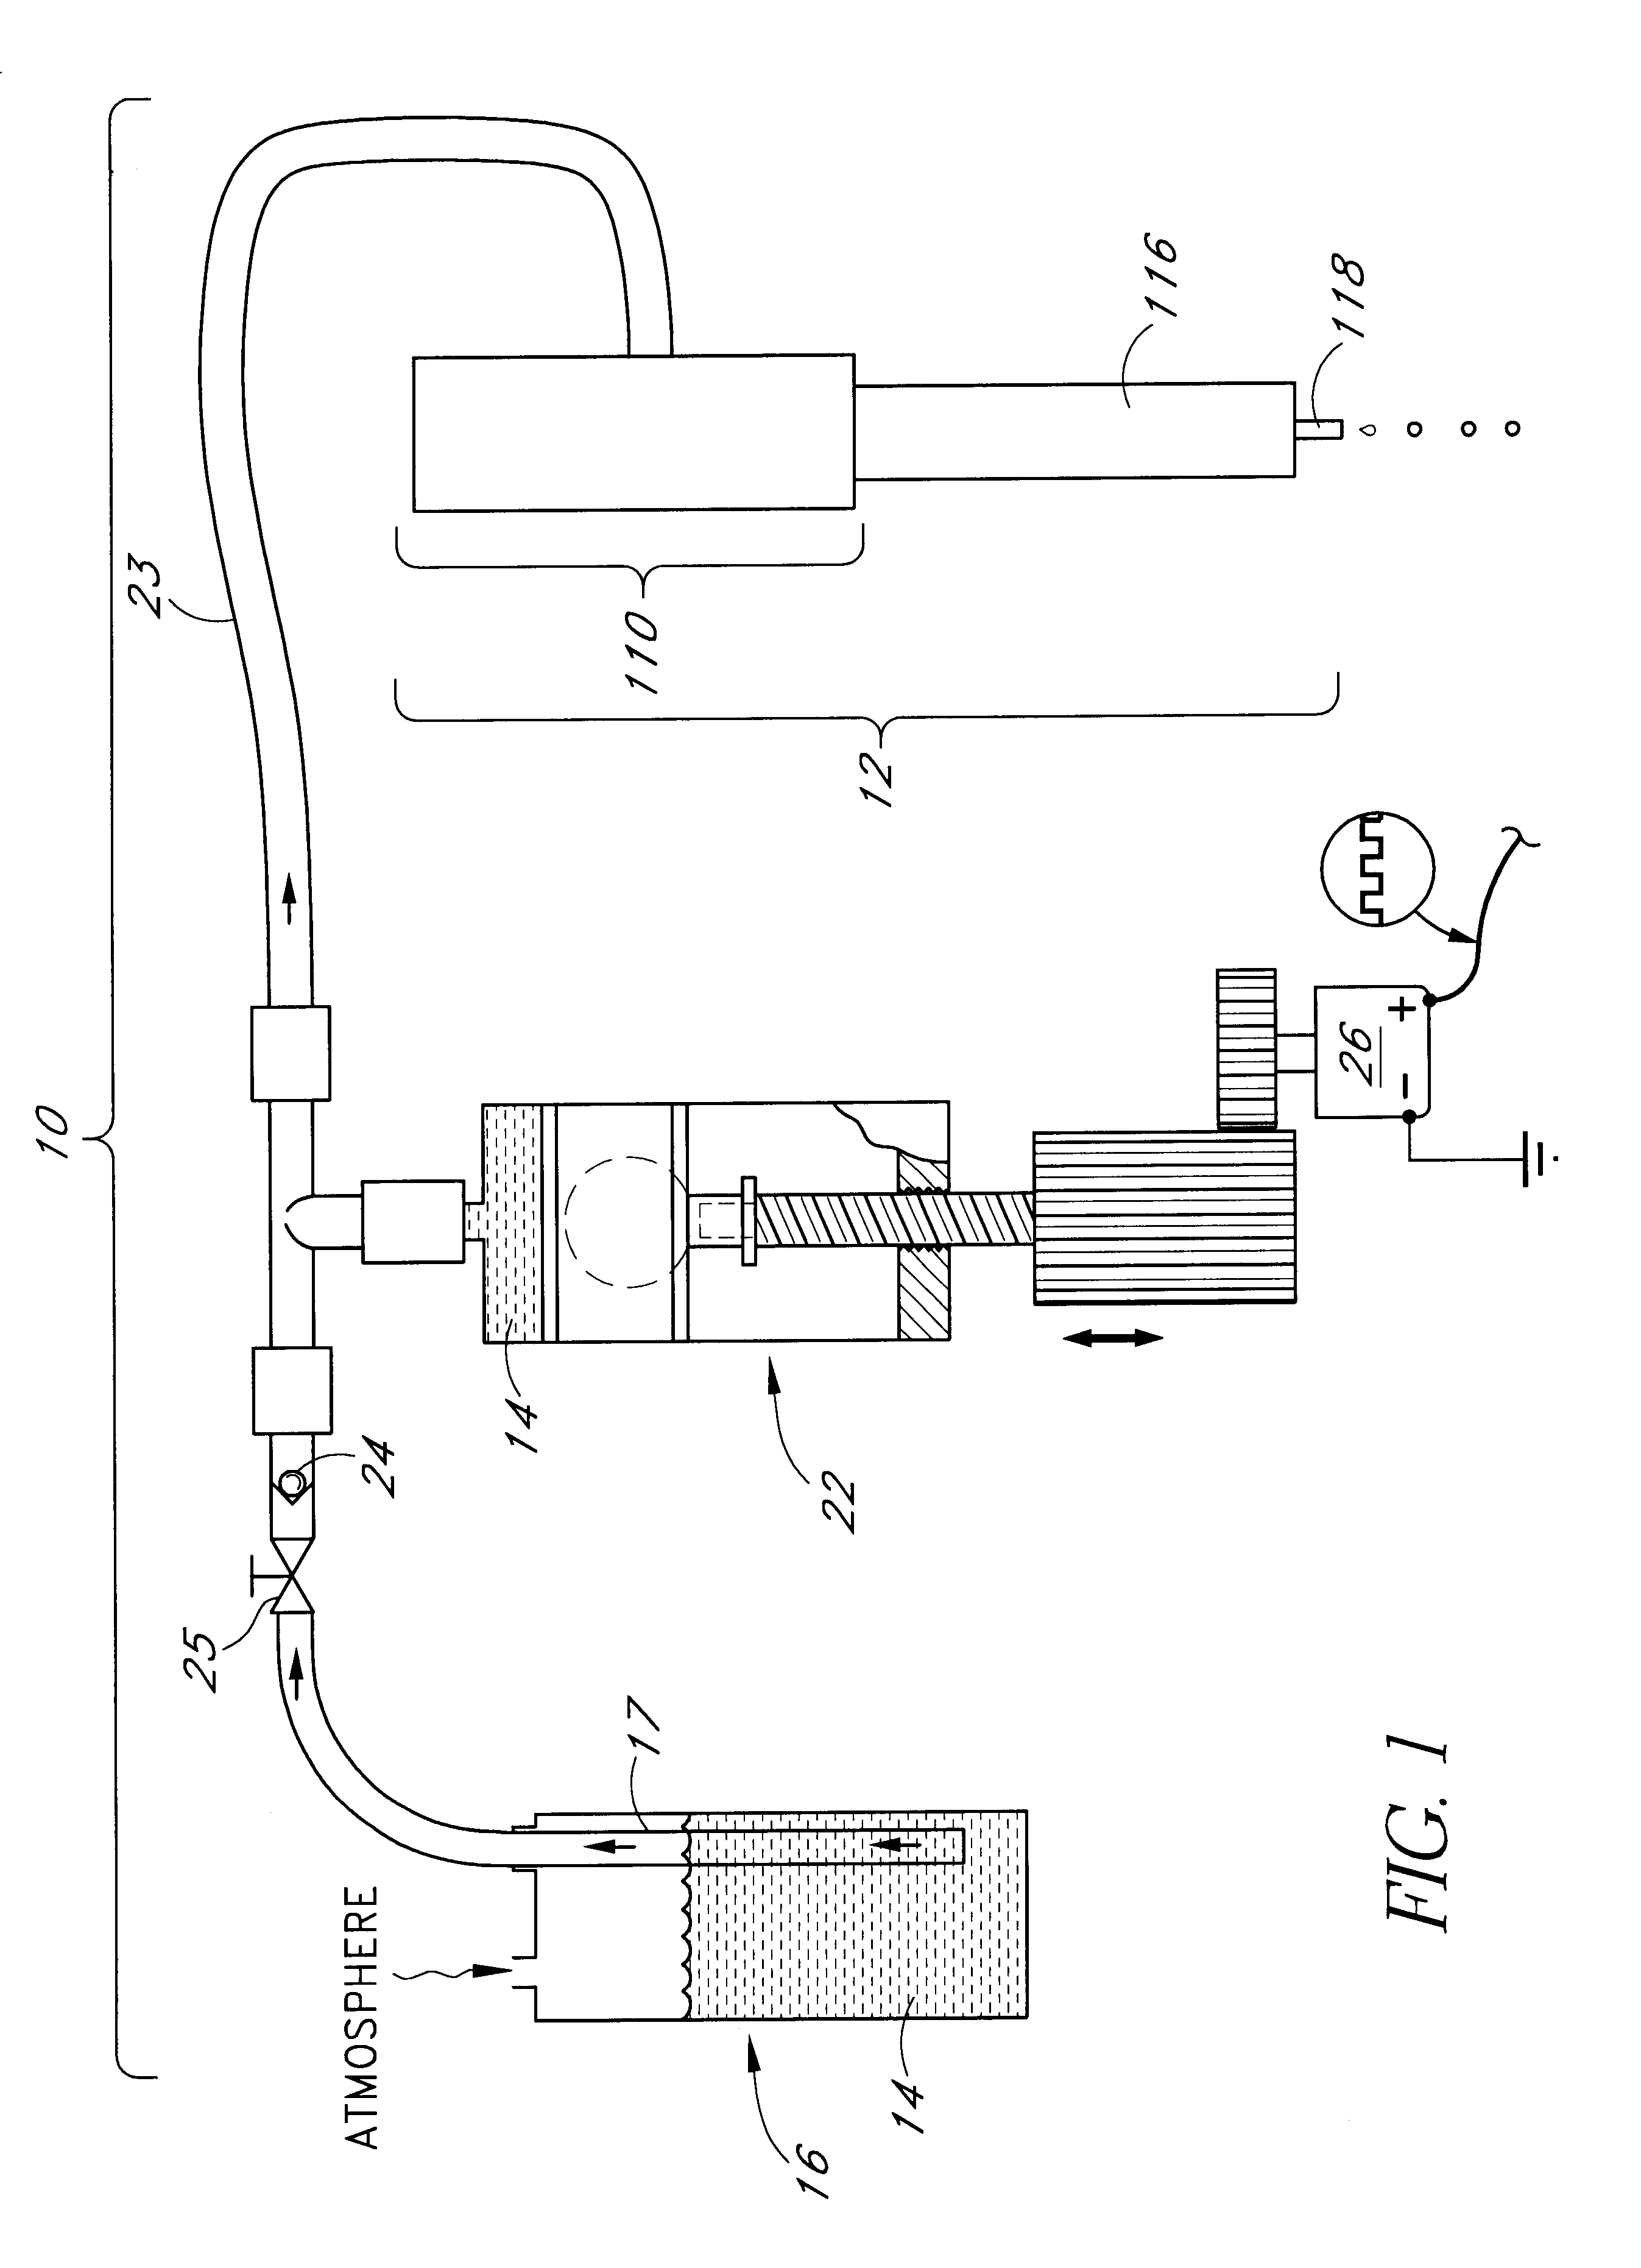 Reagent dispensing valve